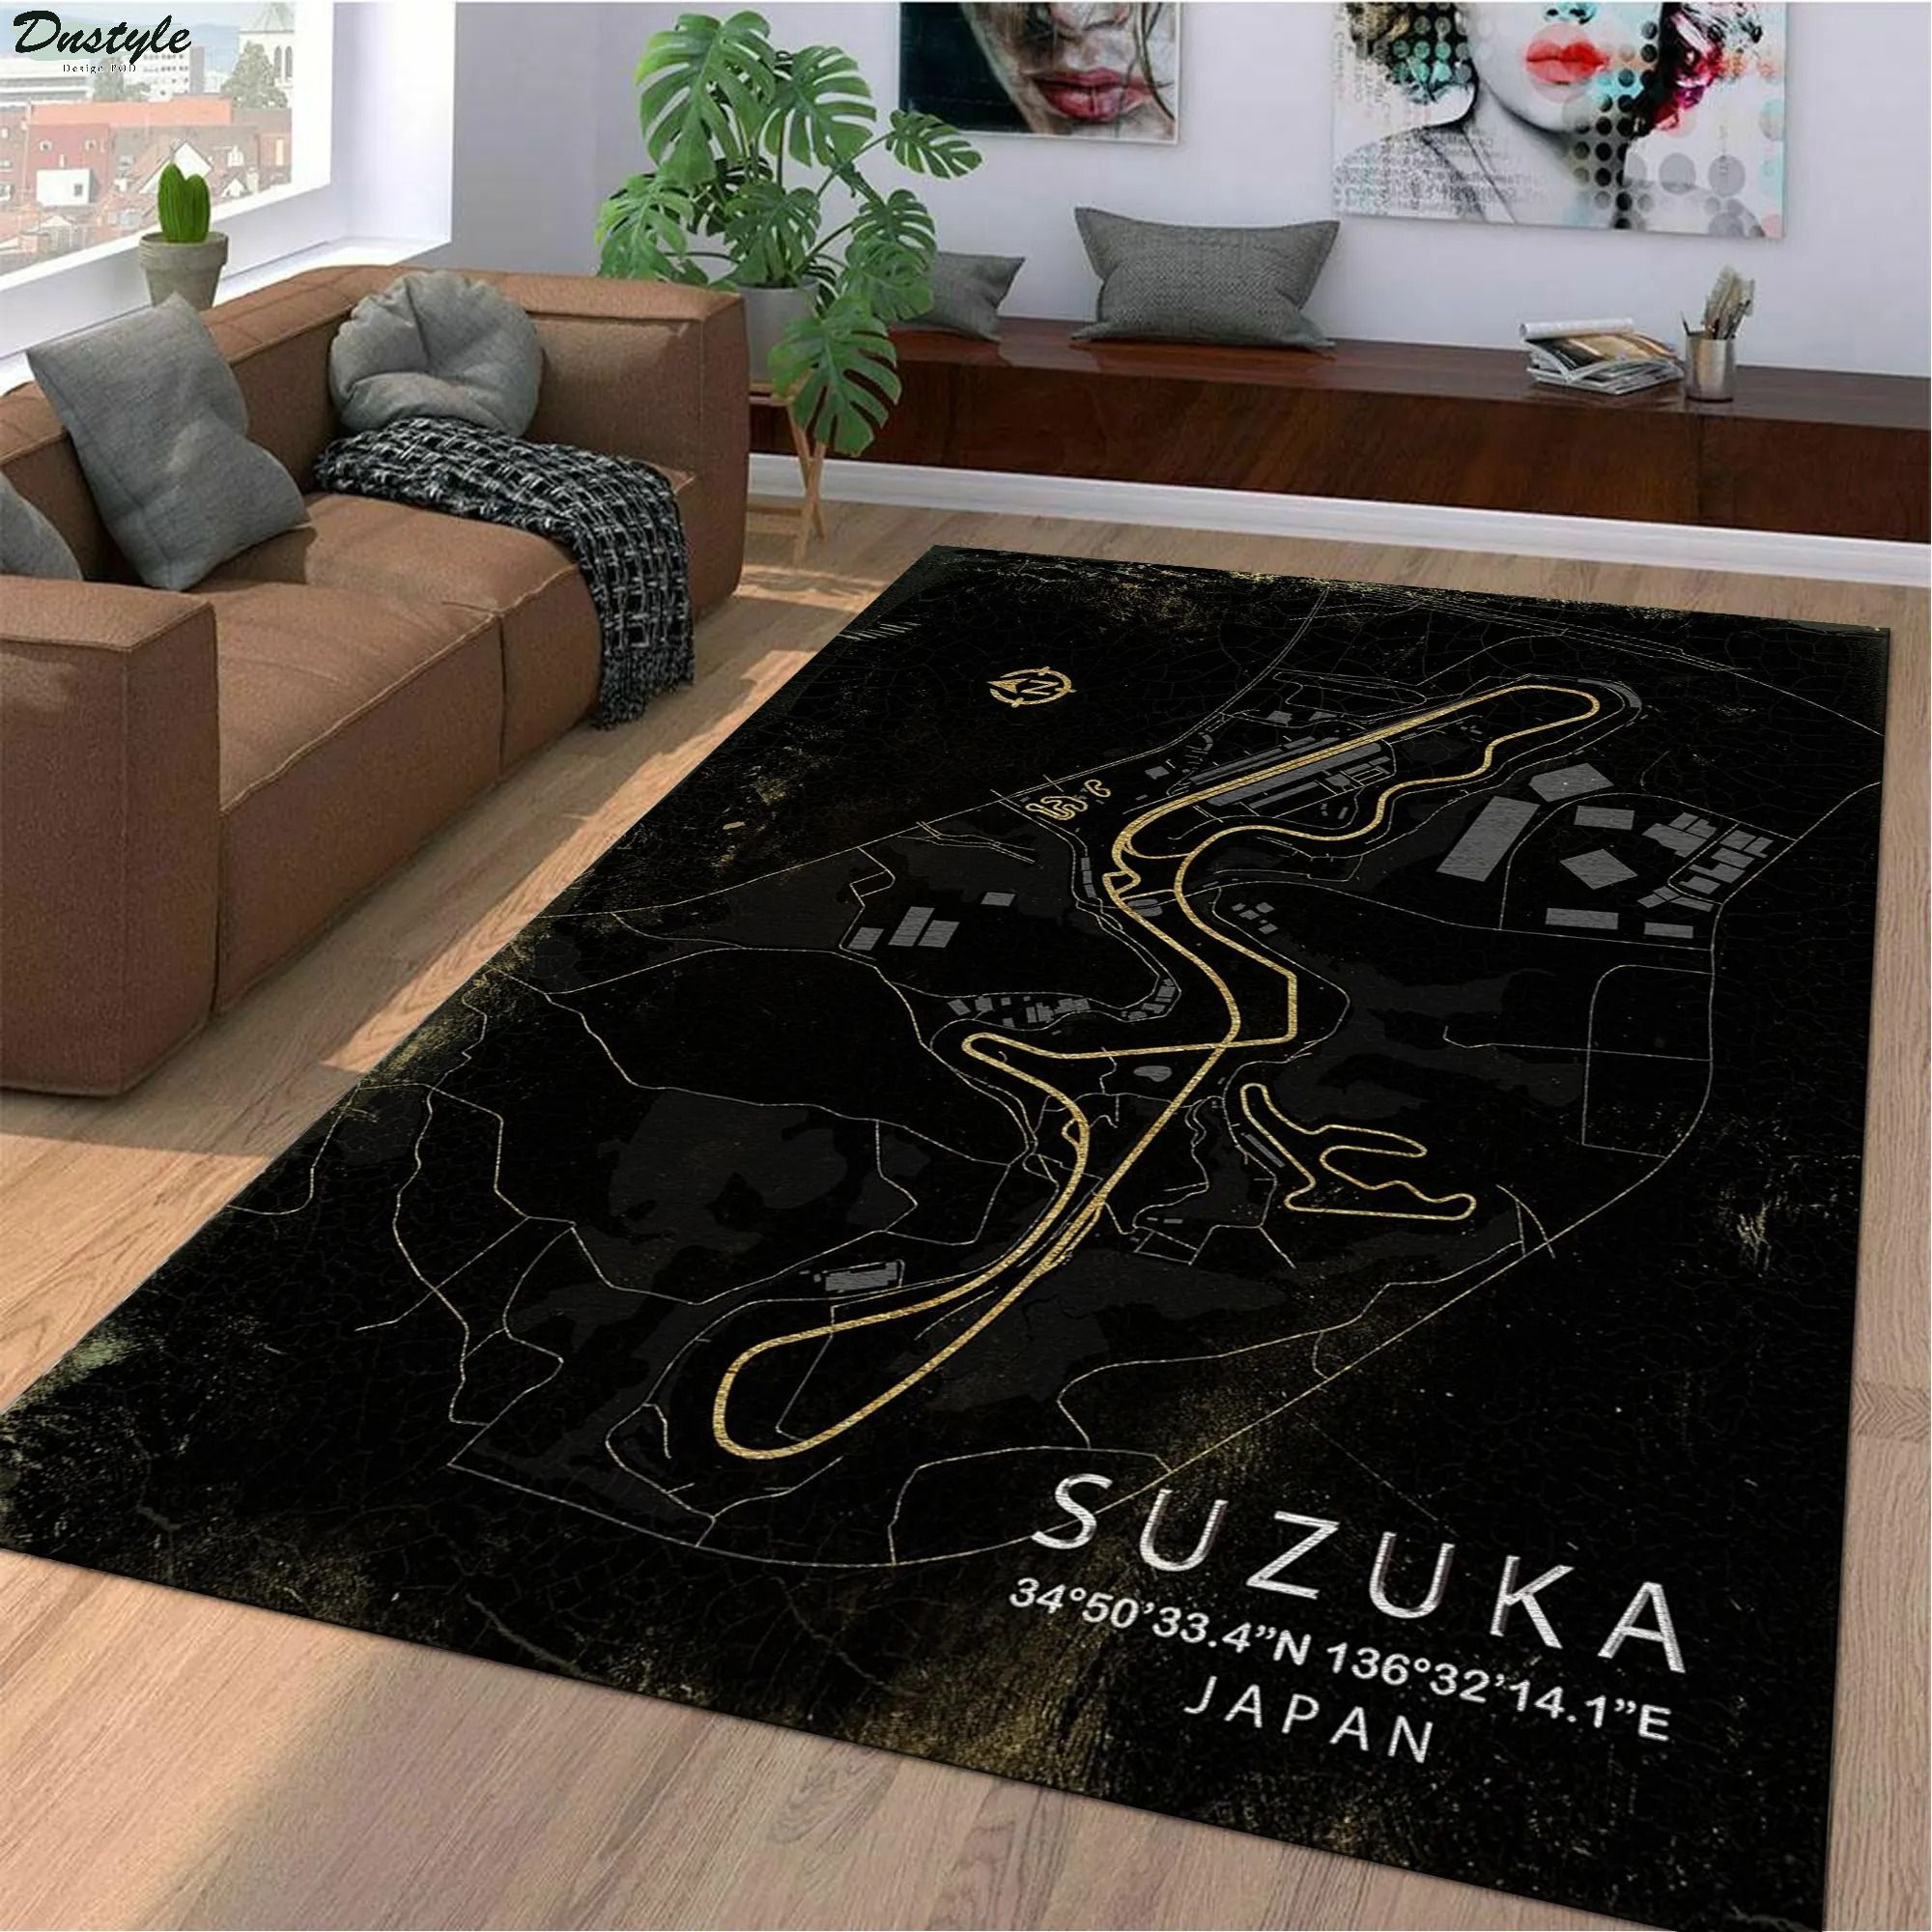 Suzuka japan f1 track rug